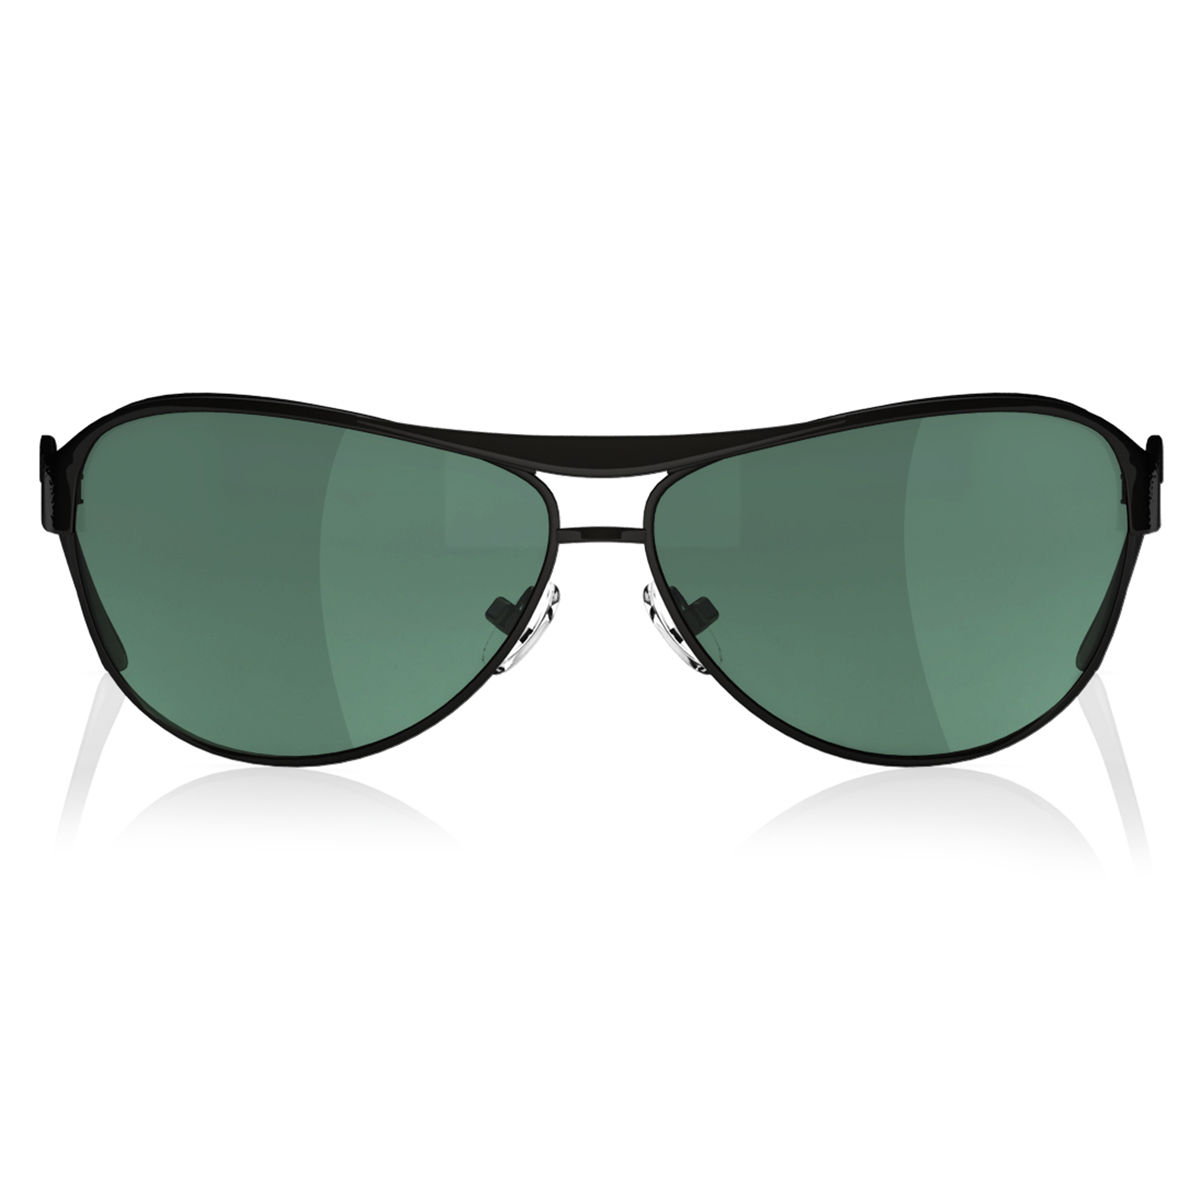 Men's & Womens Sunglasses - The Aviator - Silver Mirror | Vincero Collective